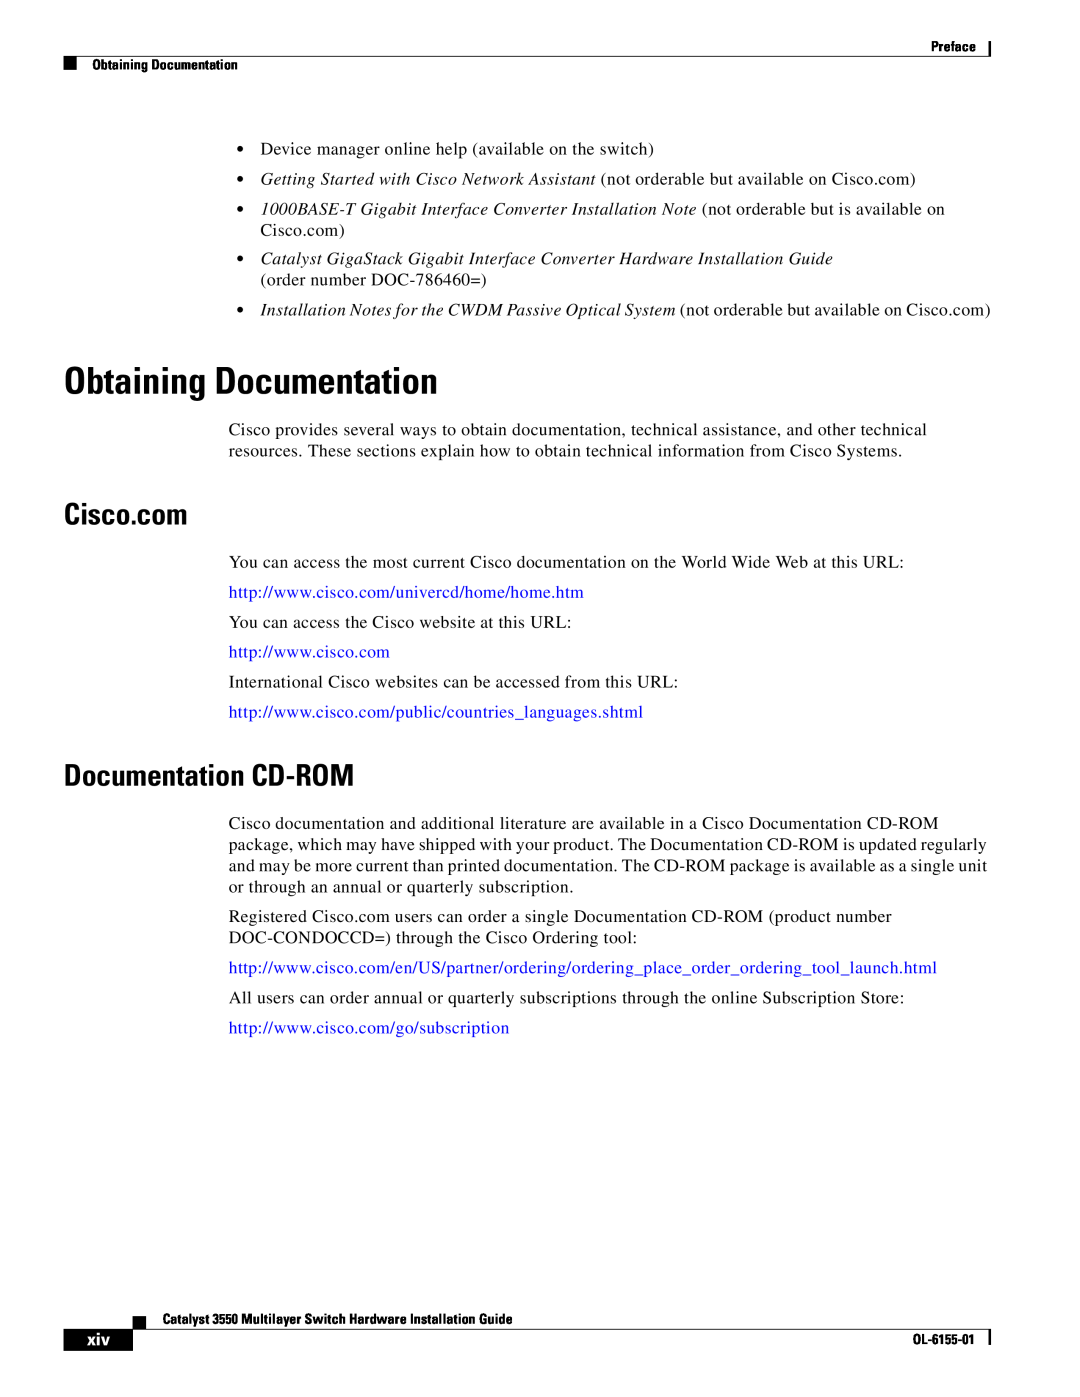 Cisco Systems 3550 manual Obtaining Documentation, Cisco.com, Documentation CD-ROM 